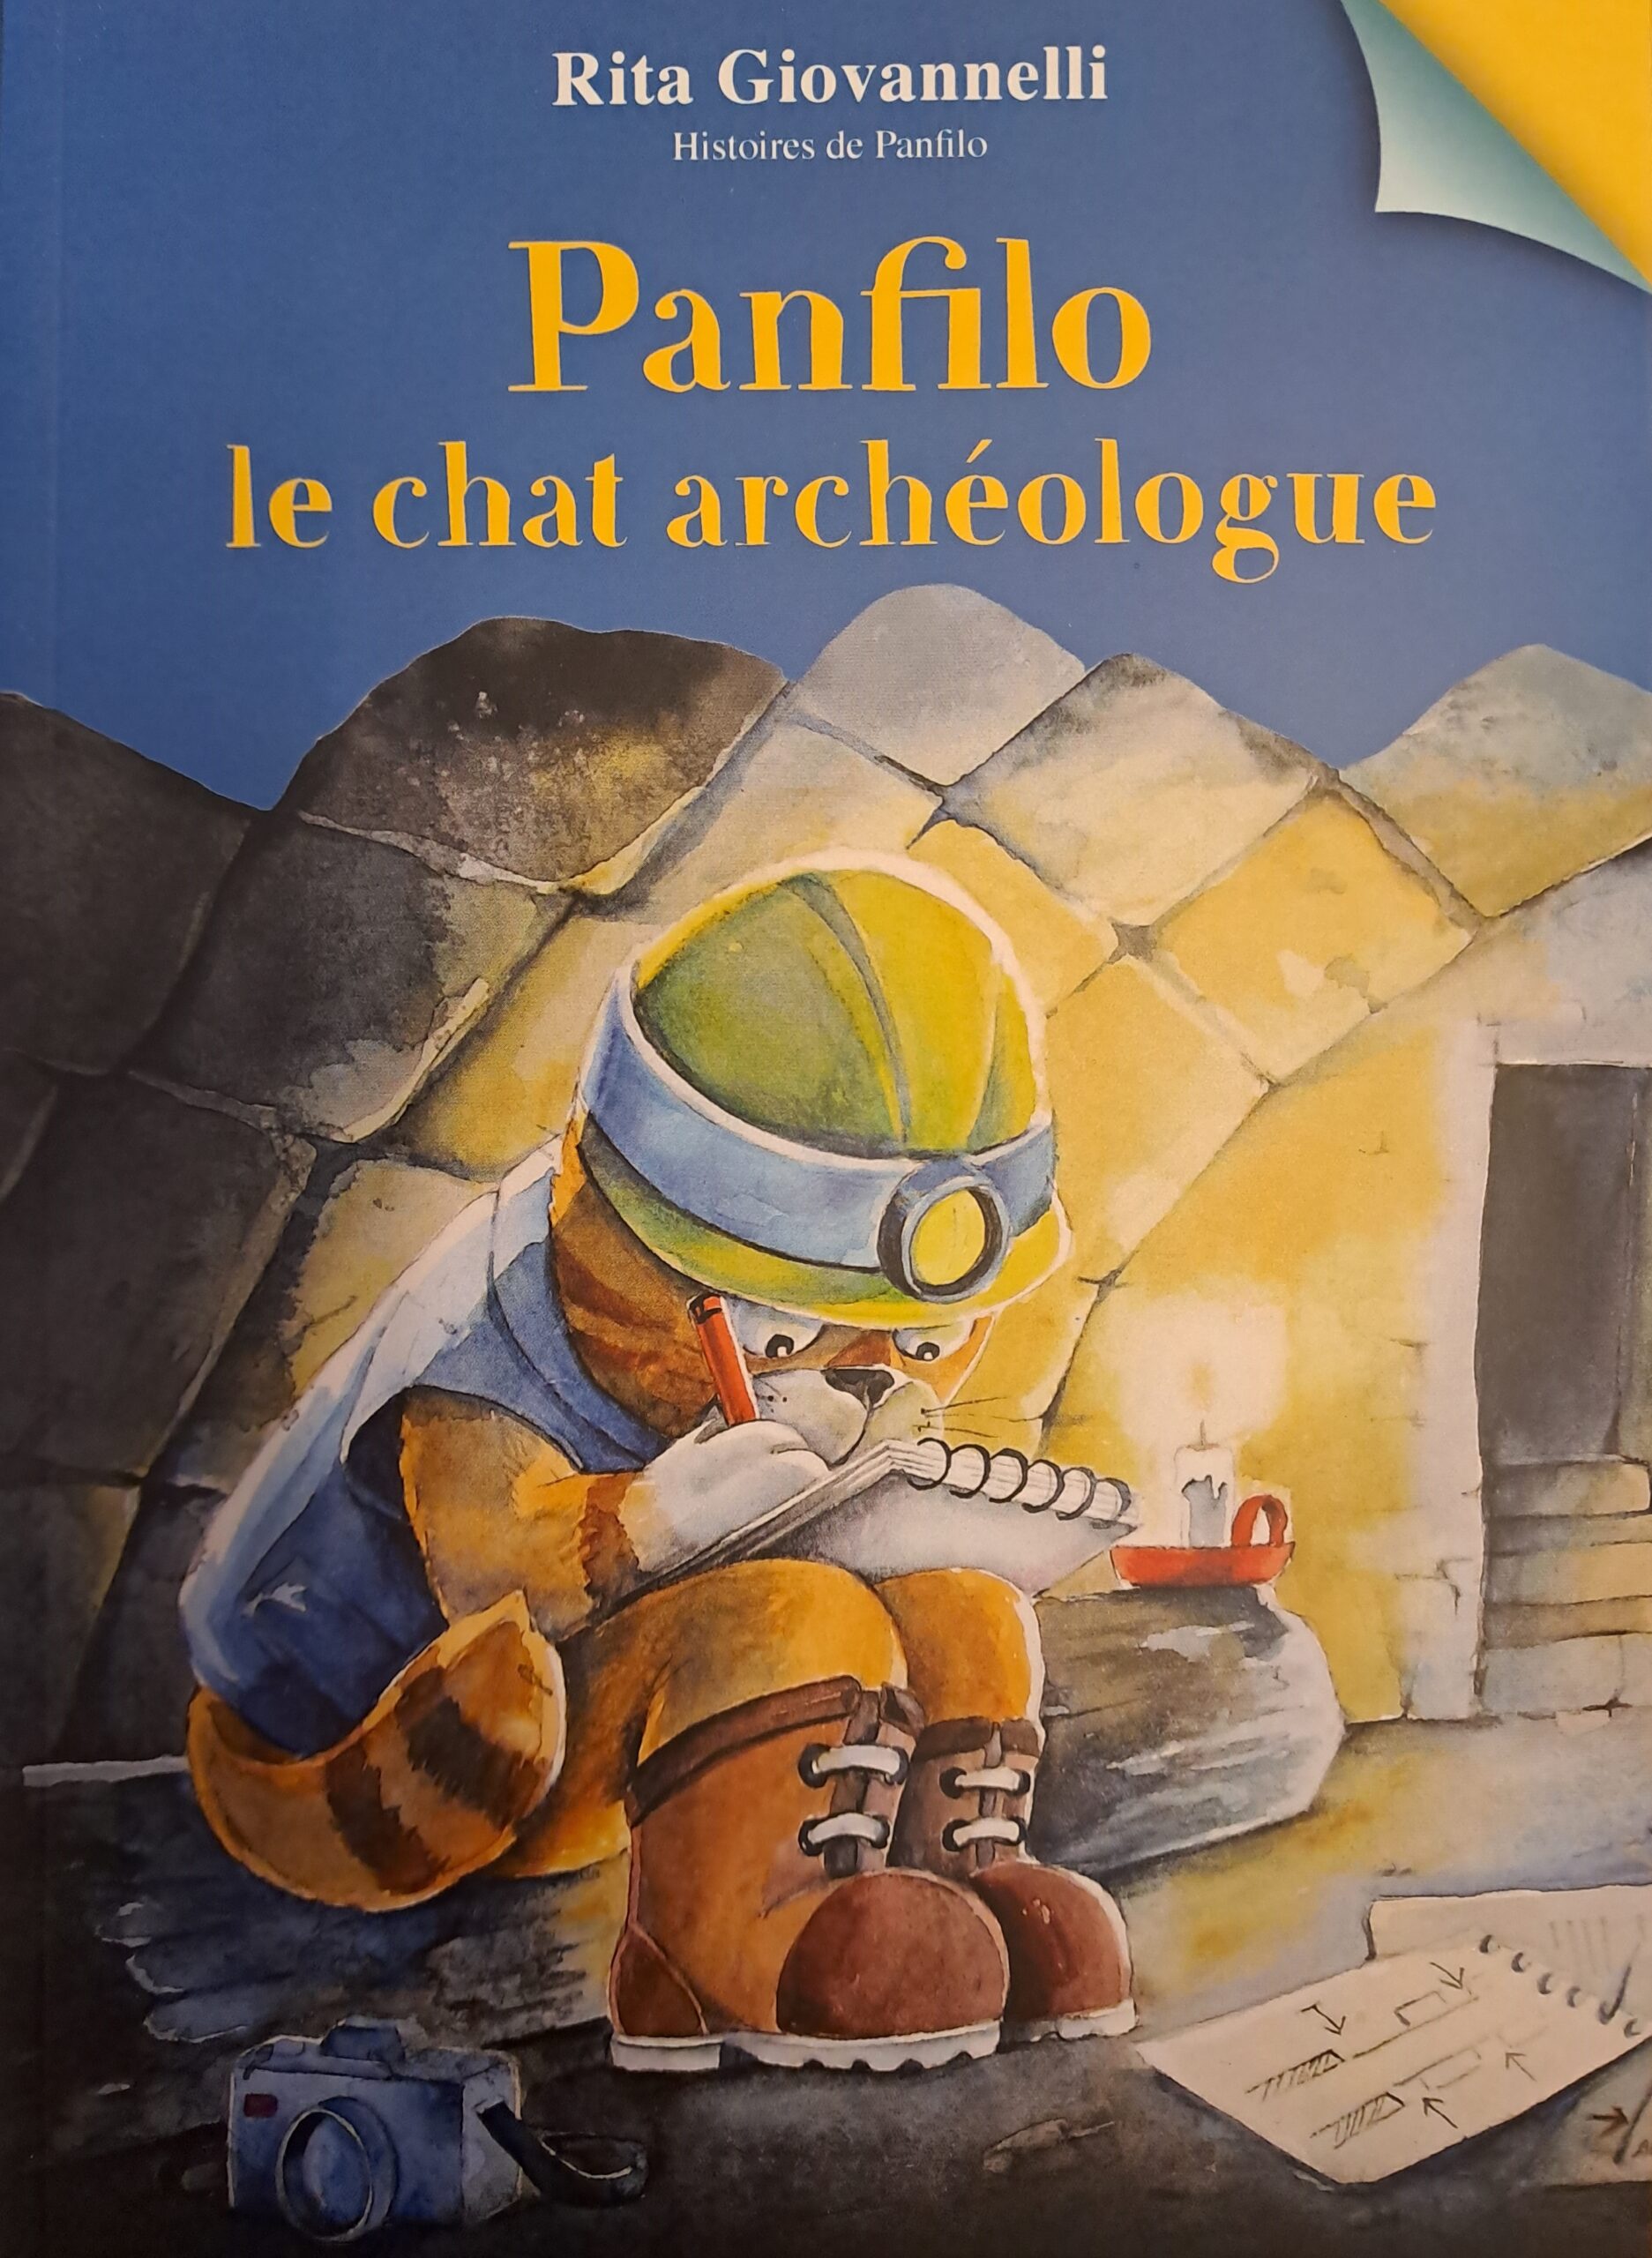 “Panfilo gatto archeologo” arriva nelle librerie in lingua francese.